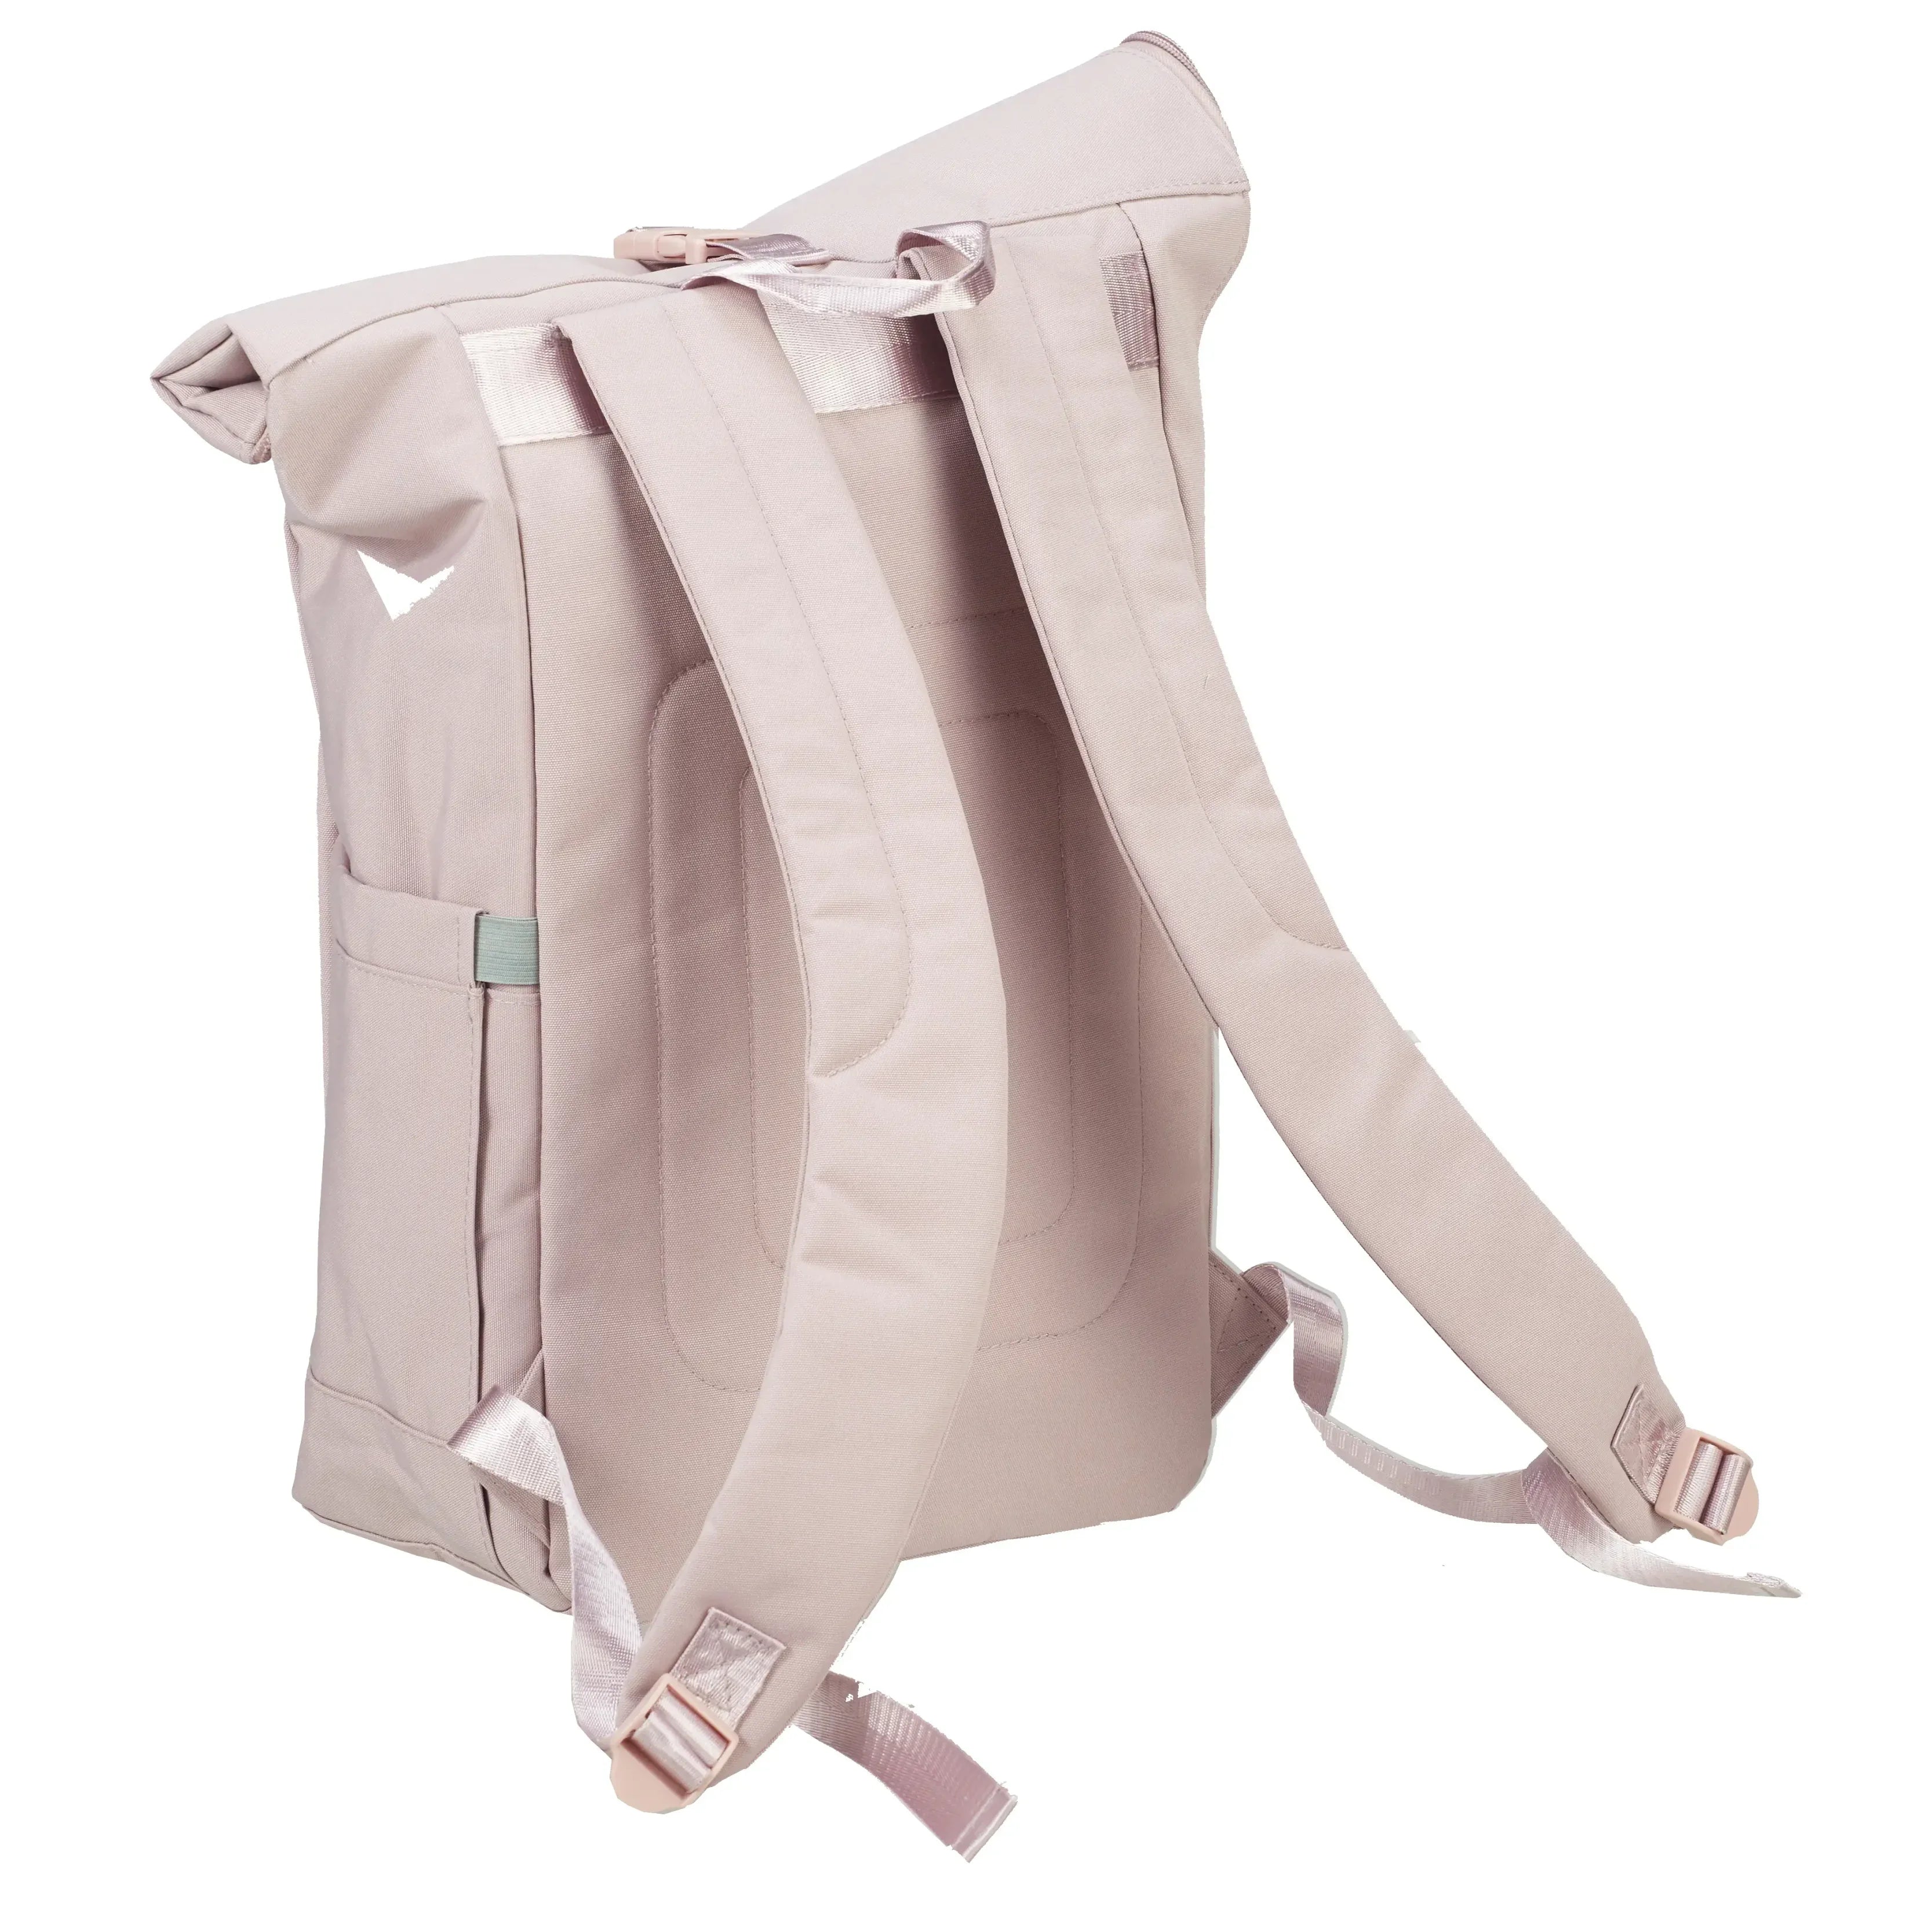 koffer-direkt.de Leisure backpack 40 cm - anthracite